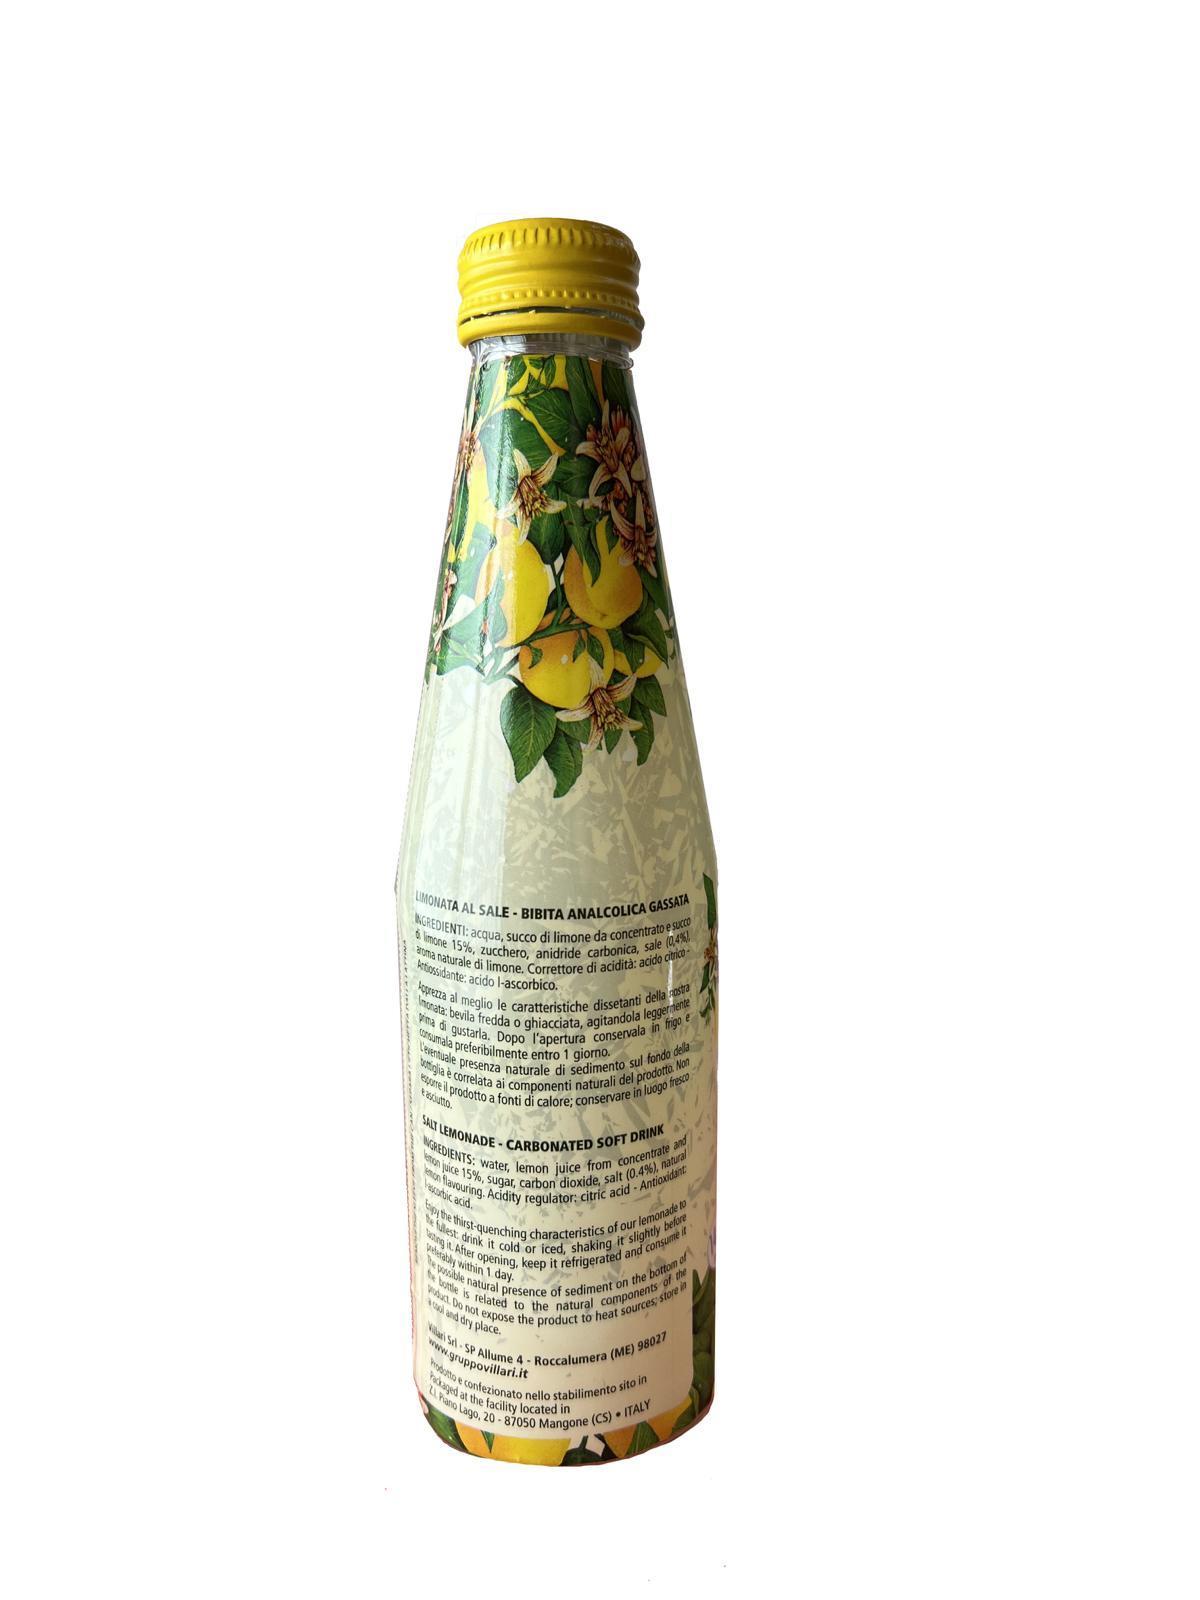 Limonata Fior di sale Lumi antica ricetta siciliana 6 bottiglie in vetro da 250ml